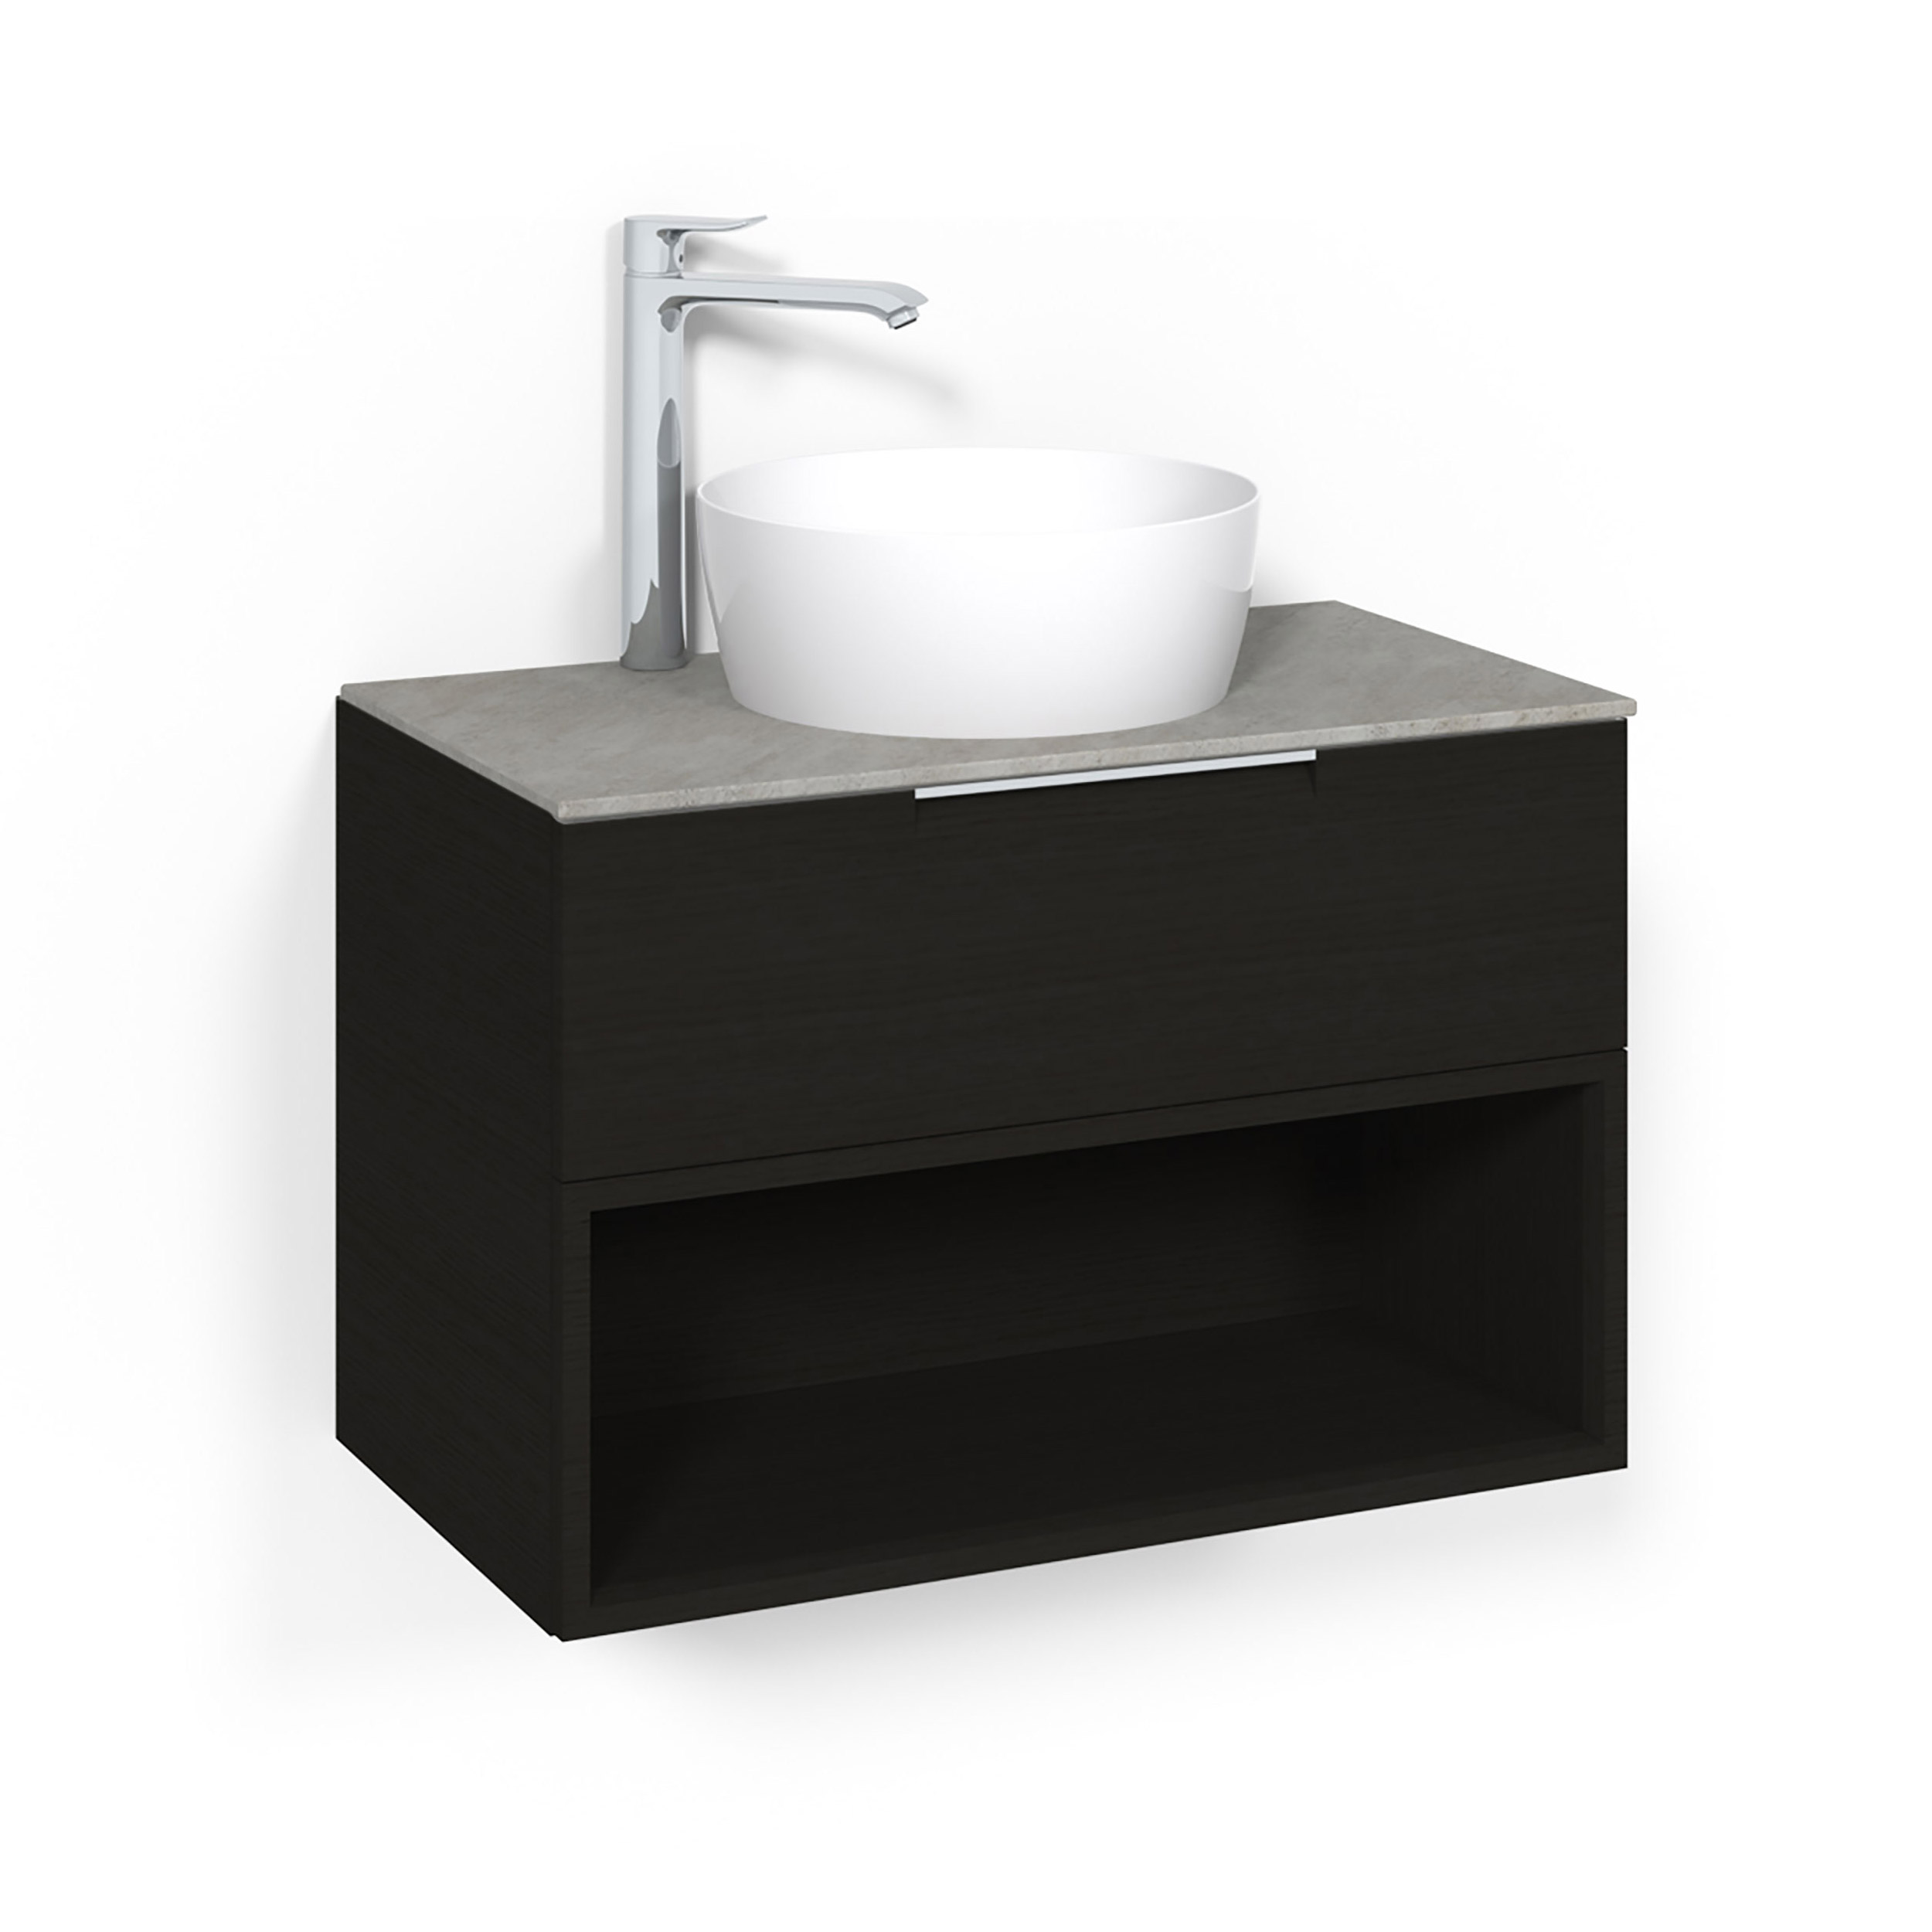 Tvättställsskåp Macro Design Crown Open Box Ovanpåliggande Tvättställ